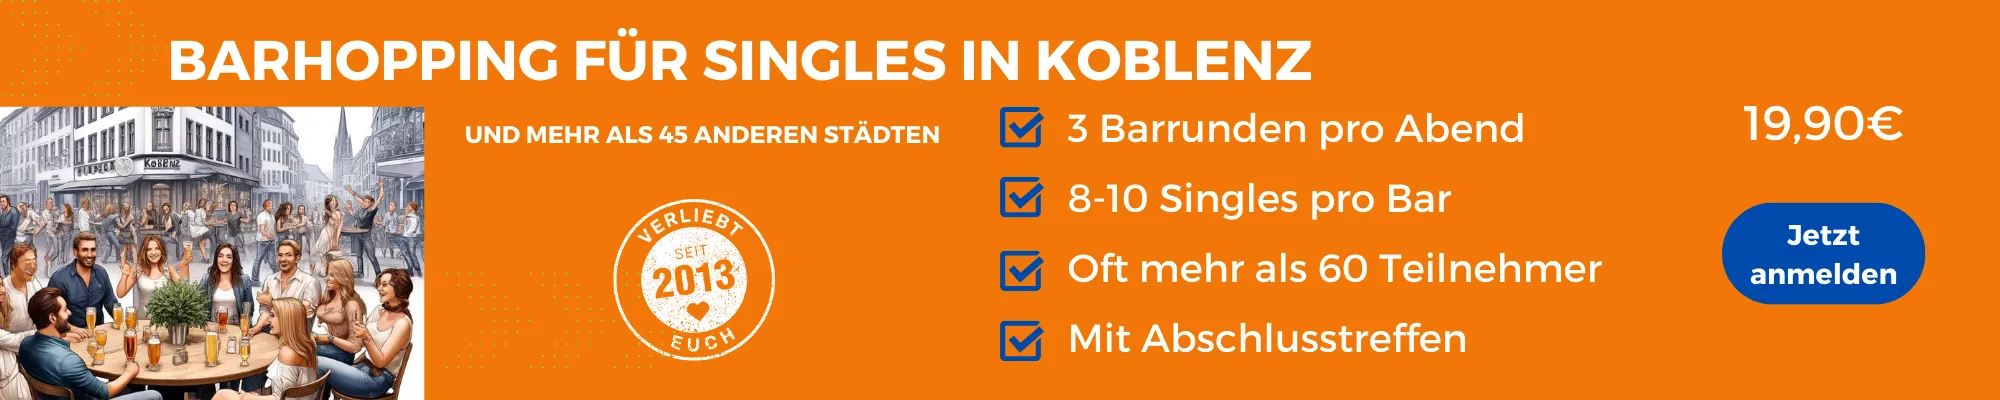 Face to Face Koblenz: Barhopping für Singles in Koblenz